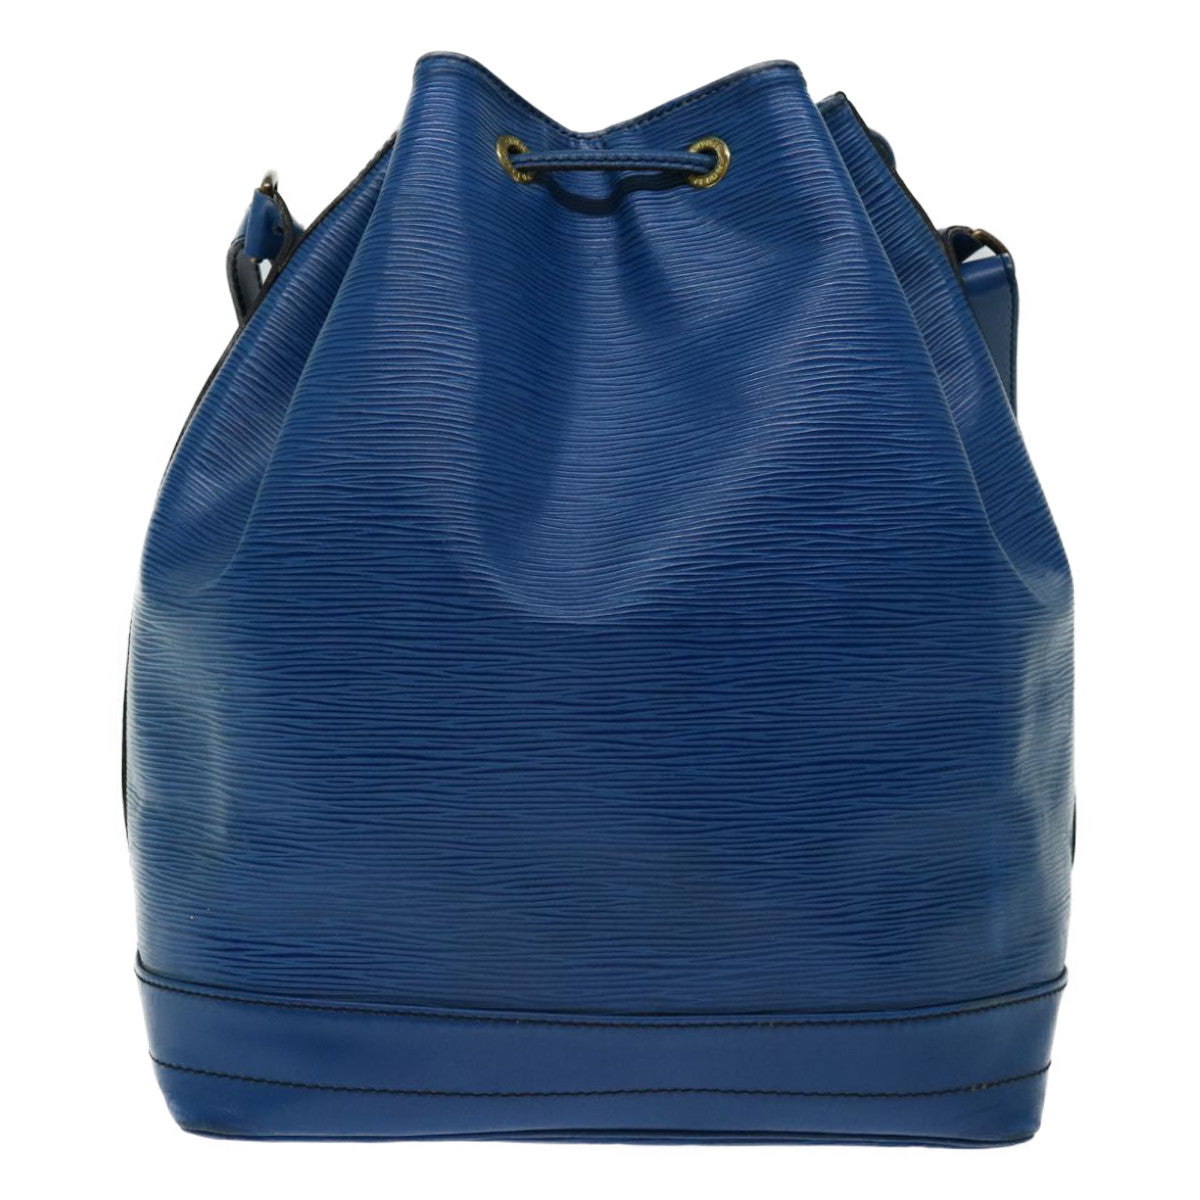 LOUIS VUITTON Epi Noe Shoulder Bag Blue M44005 LV Auth bs13228 - 0